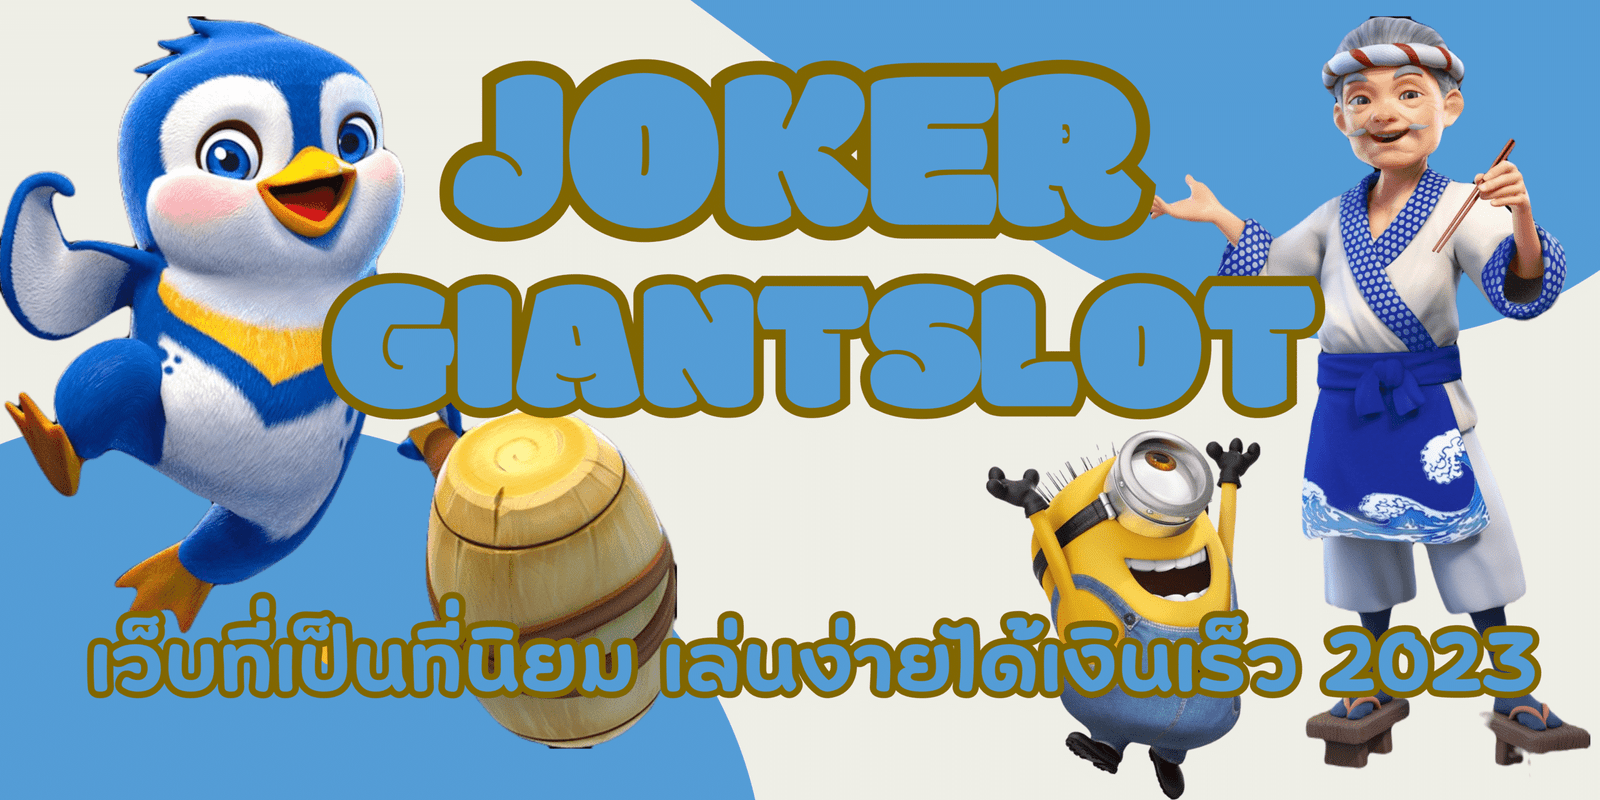 joker-Giantslot-เว็บที่เป็นที่นิยม